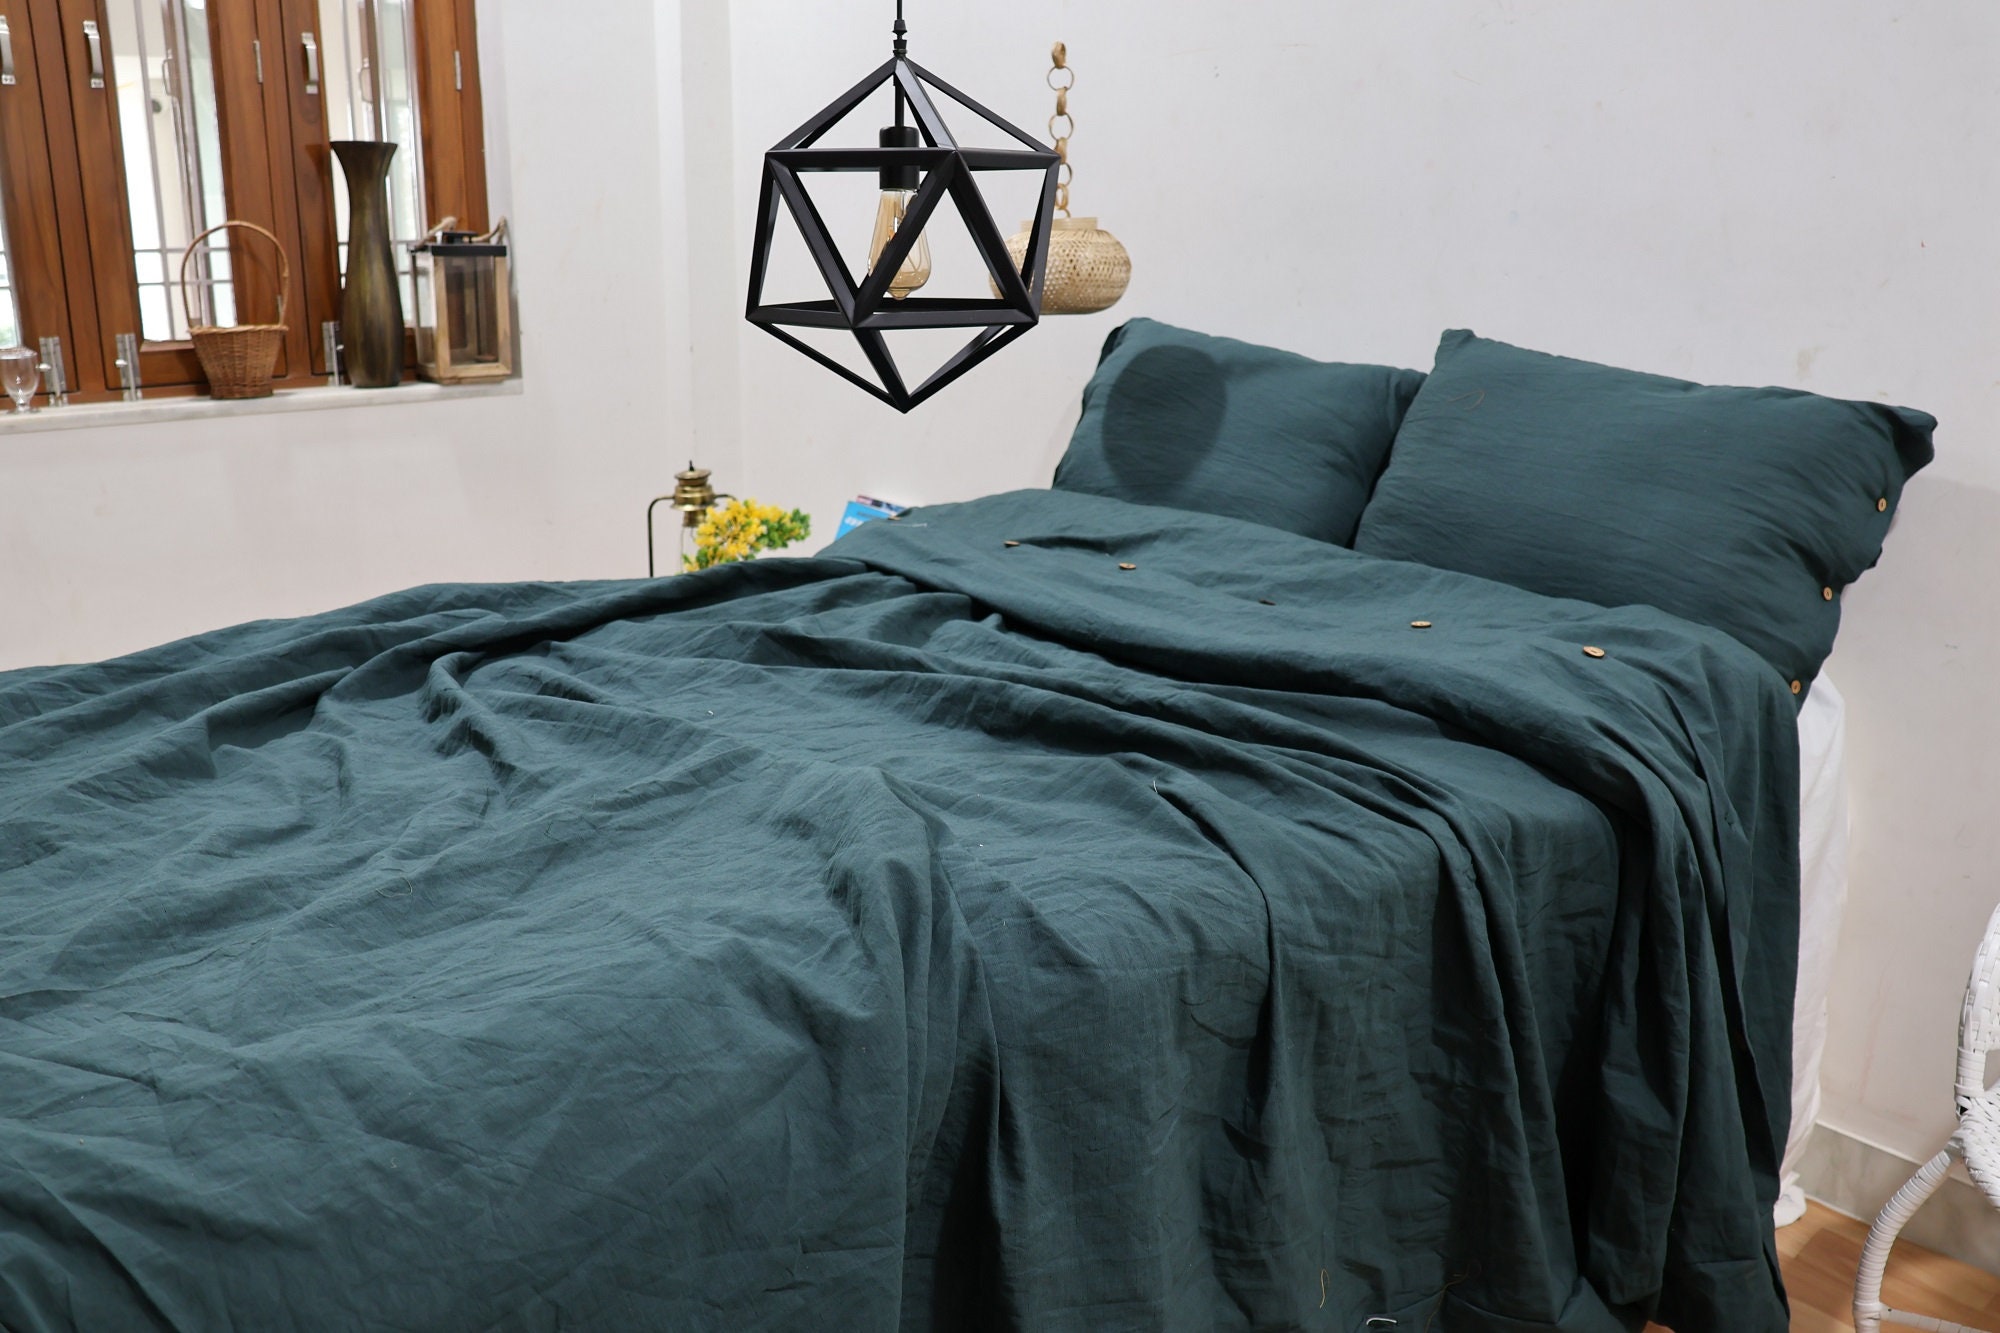 Linen Duvet Cover, Moss Green Linen Bedding, Stonewashed Natural Quilt  Cover, Linen Gift Idea 